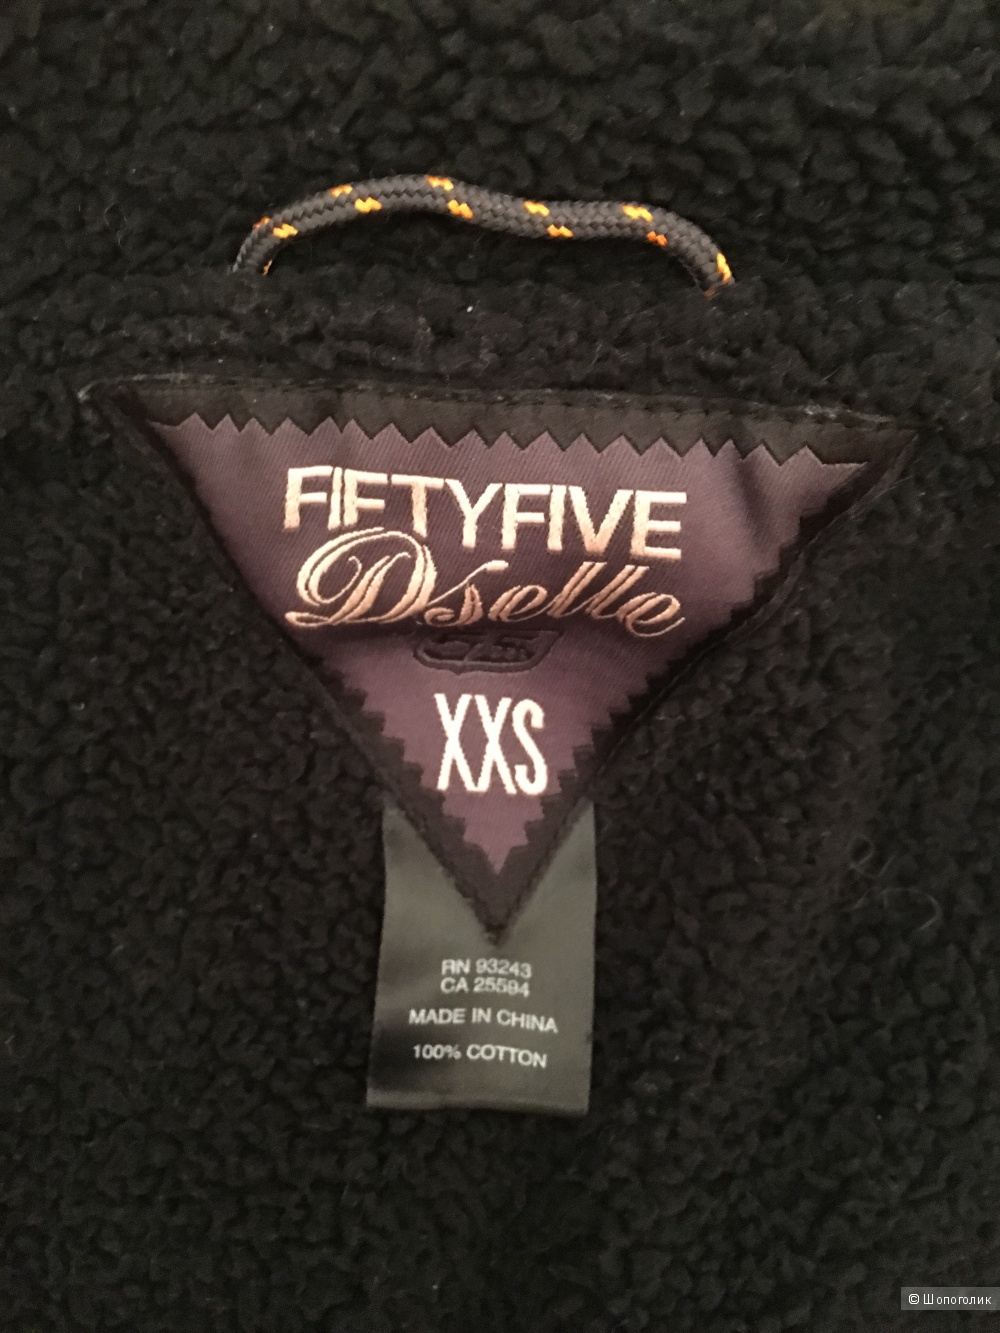 Джинсовая куртка Fiftyfave Dselle, размер S